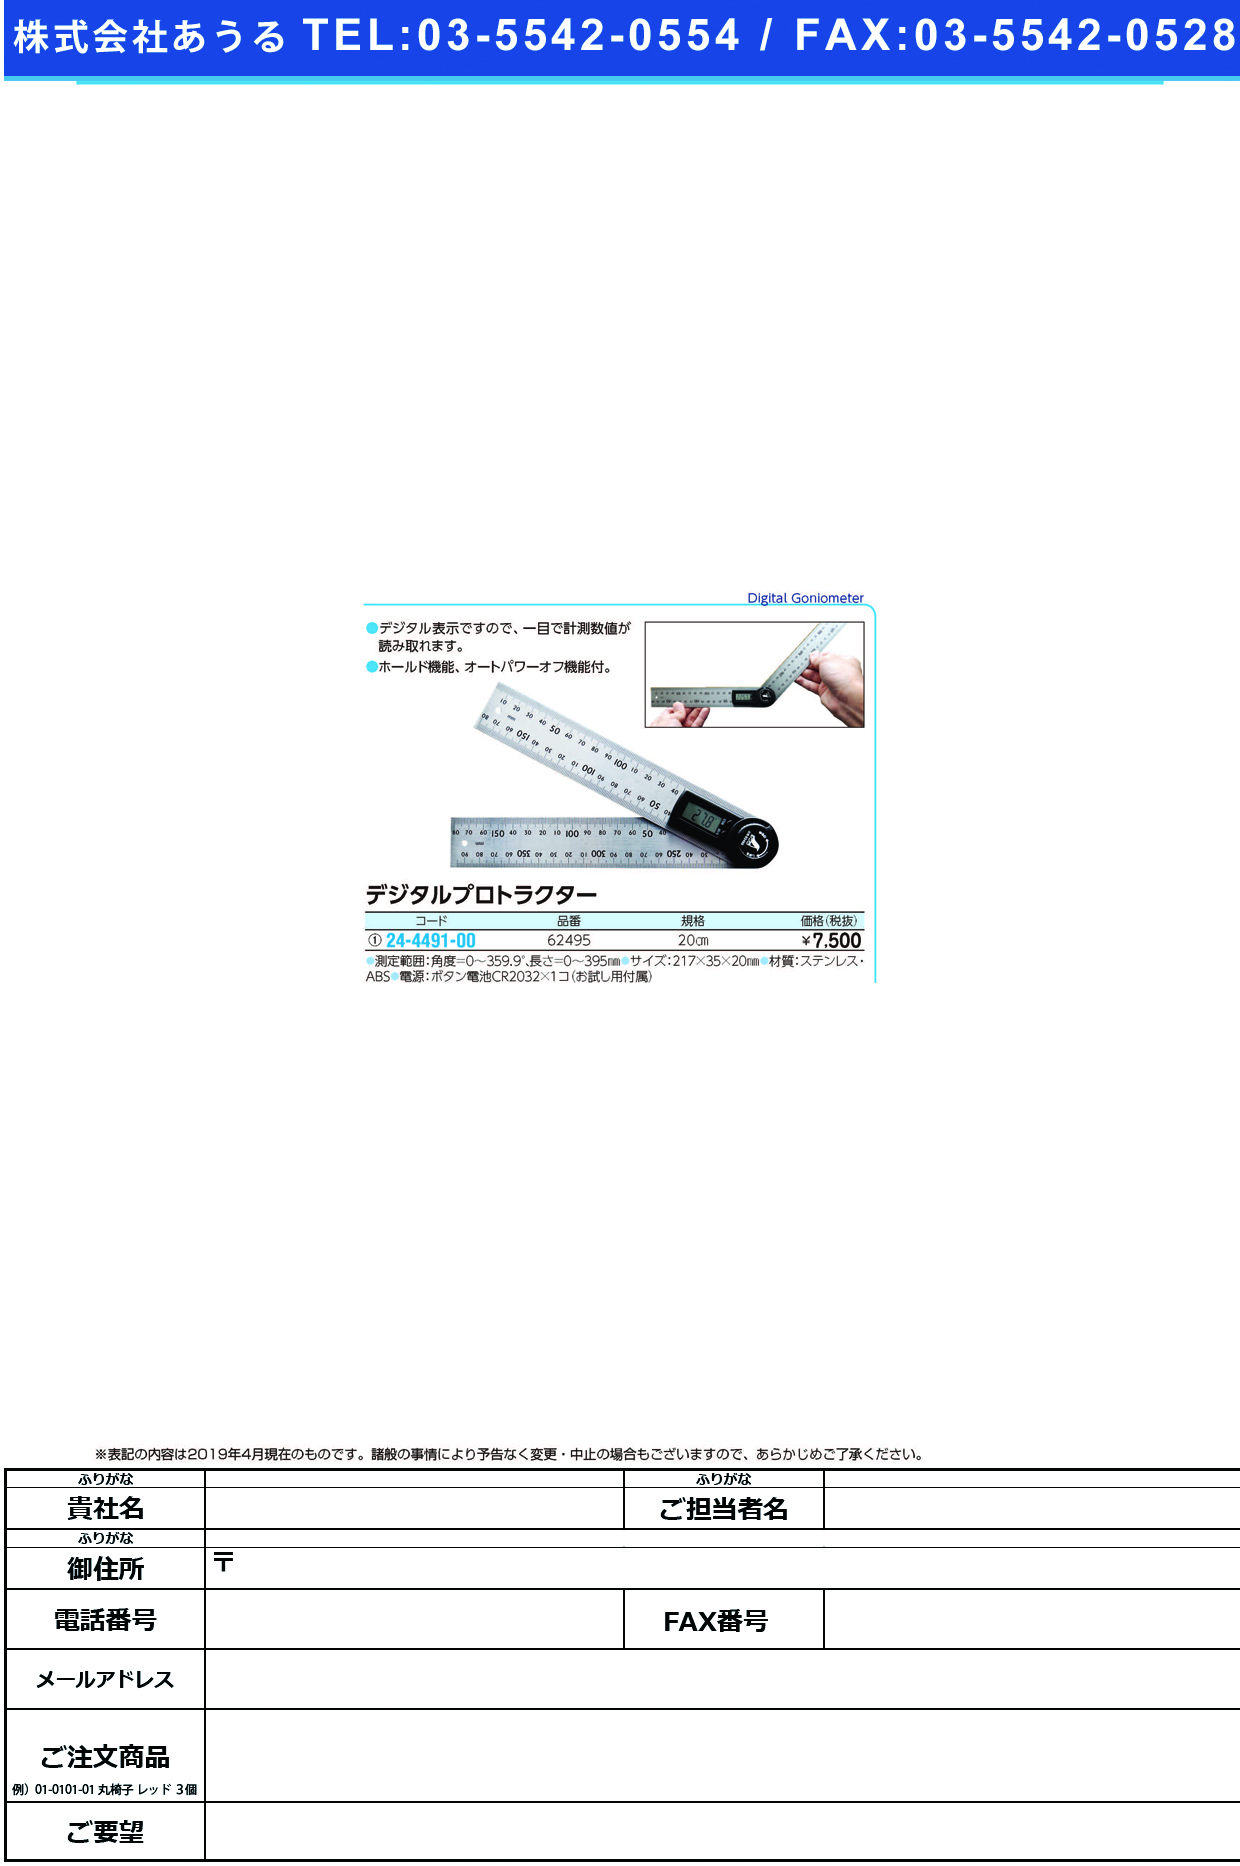 (24-4491-00)デジタルプロトラクター 62495(20CM) ﾃﾞｼﾞﾀﾙﾌﾟﾛﾄﾗｸﾀｰ【1個単位】【2019年カタログ商品】